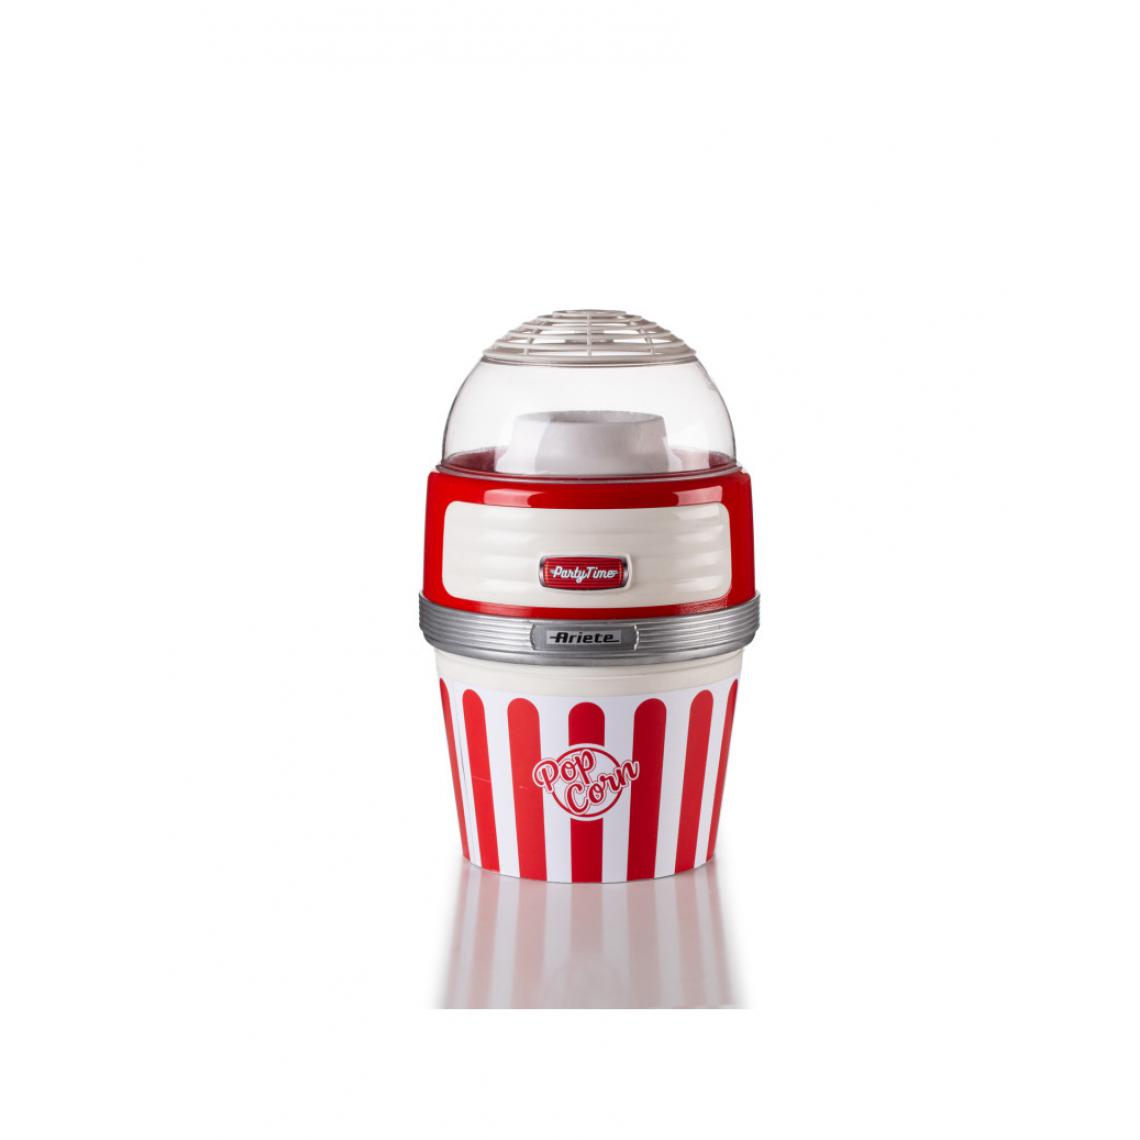 Ariete - Machine à popcorn XL Party Time Ariete (Groupe De'Longhi) - modèle 2957 - Cuisson festive